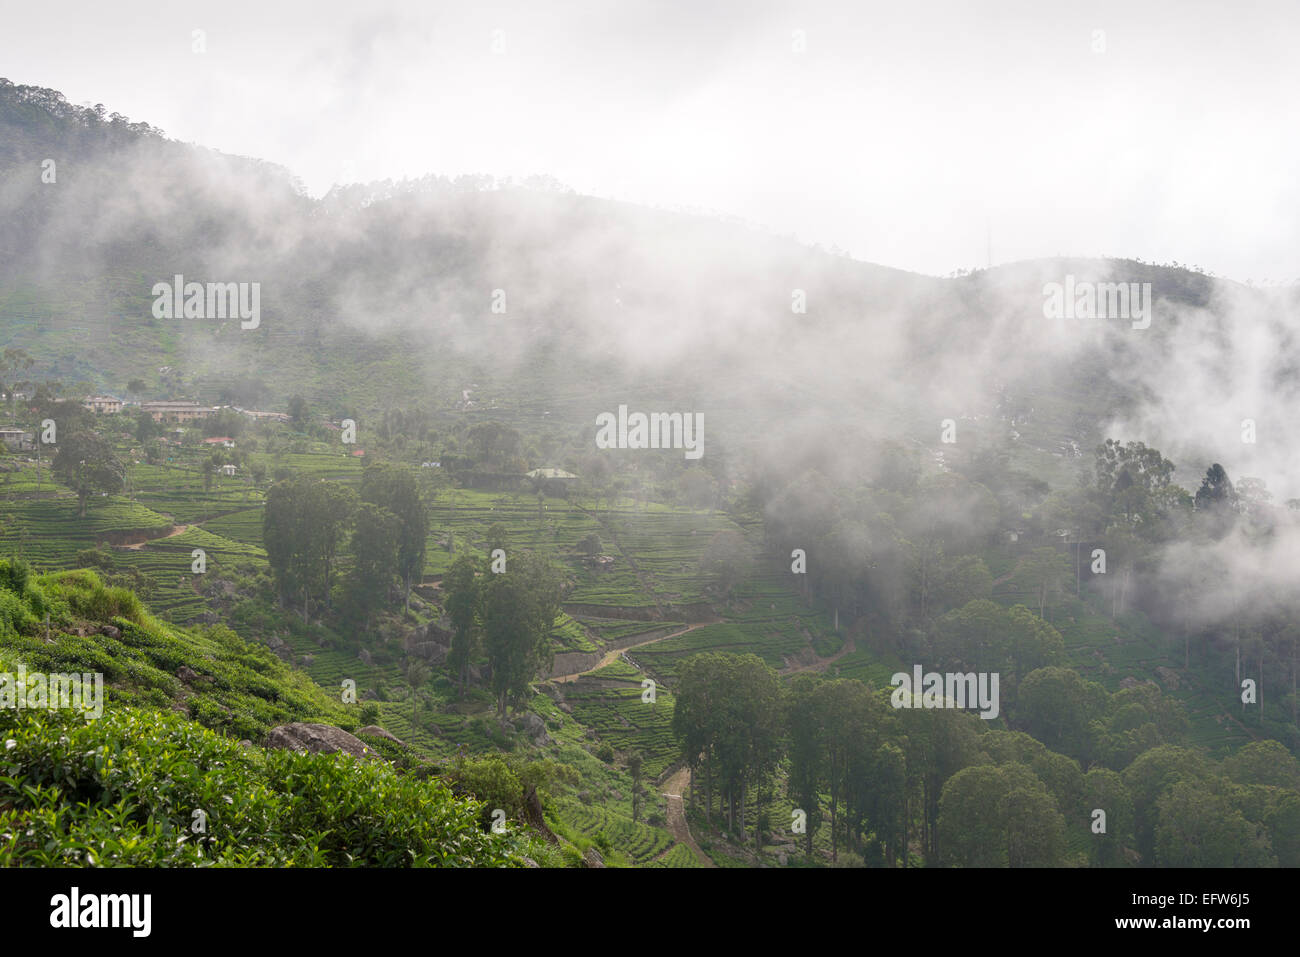 La piantagione di tè coperta dalla nebbia vicino Haputale, provincia di Uva, Sri Lanka. Foto Stock